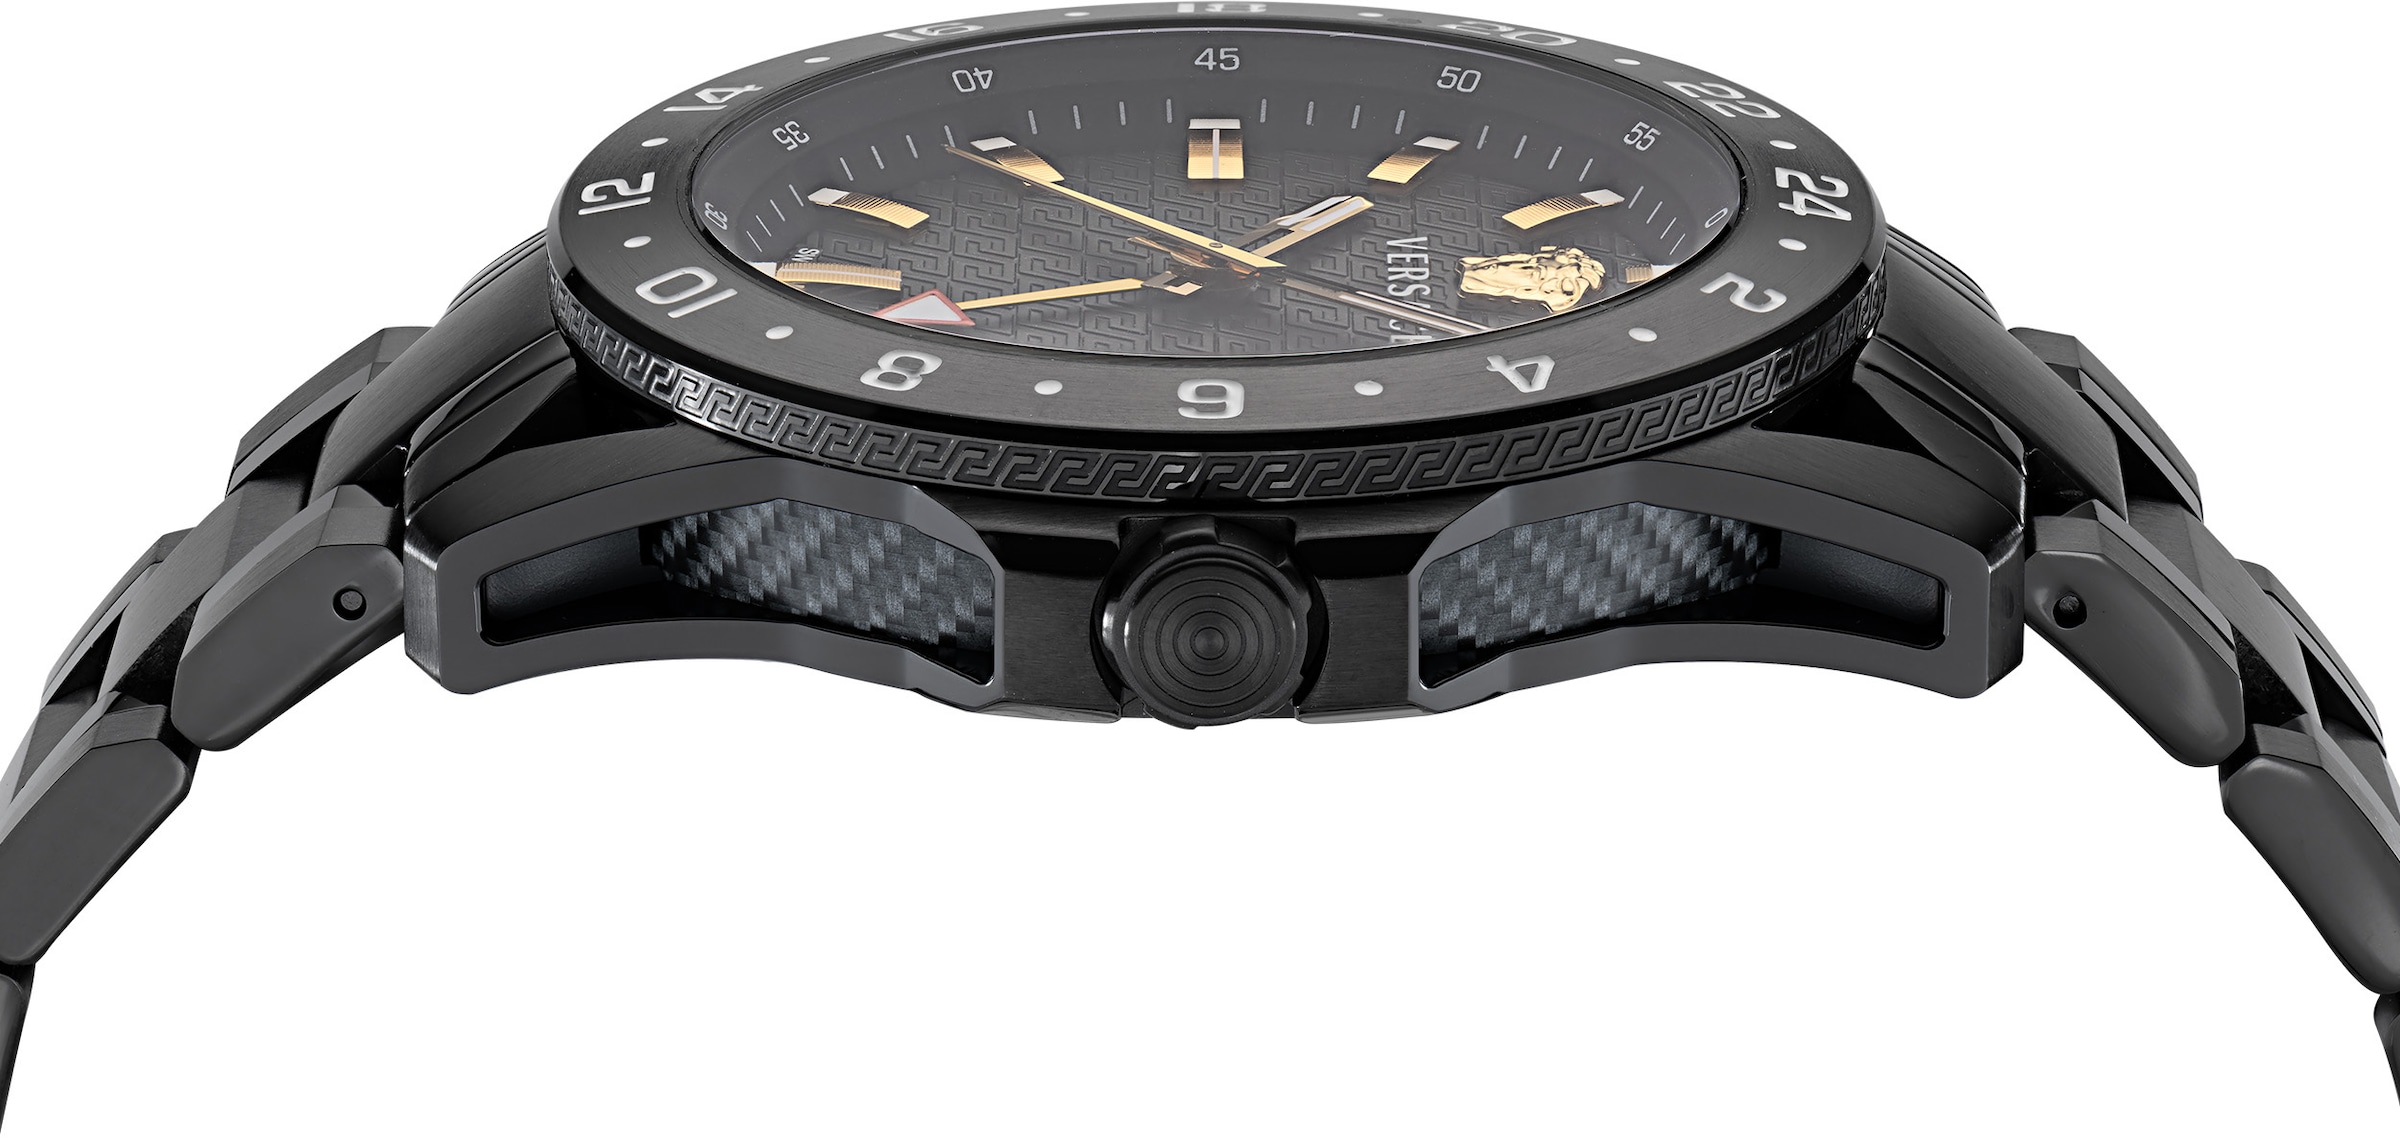 Versace Schweizer Uhr »SPORT TECH GMT, VE2W00622« online kaufen | BAUR